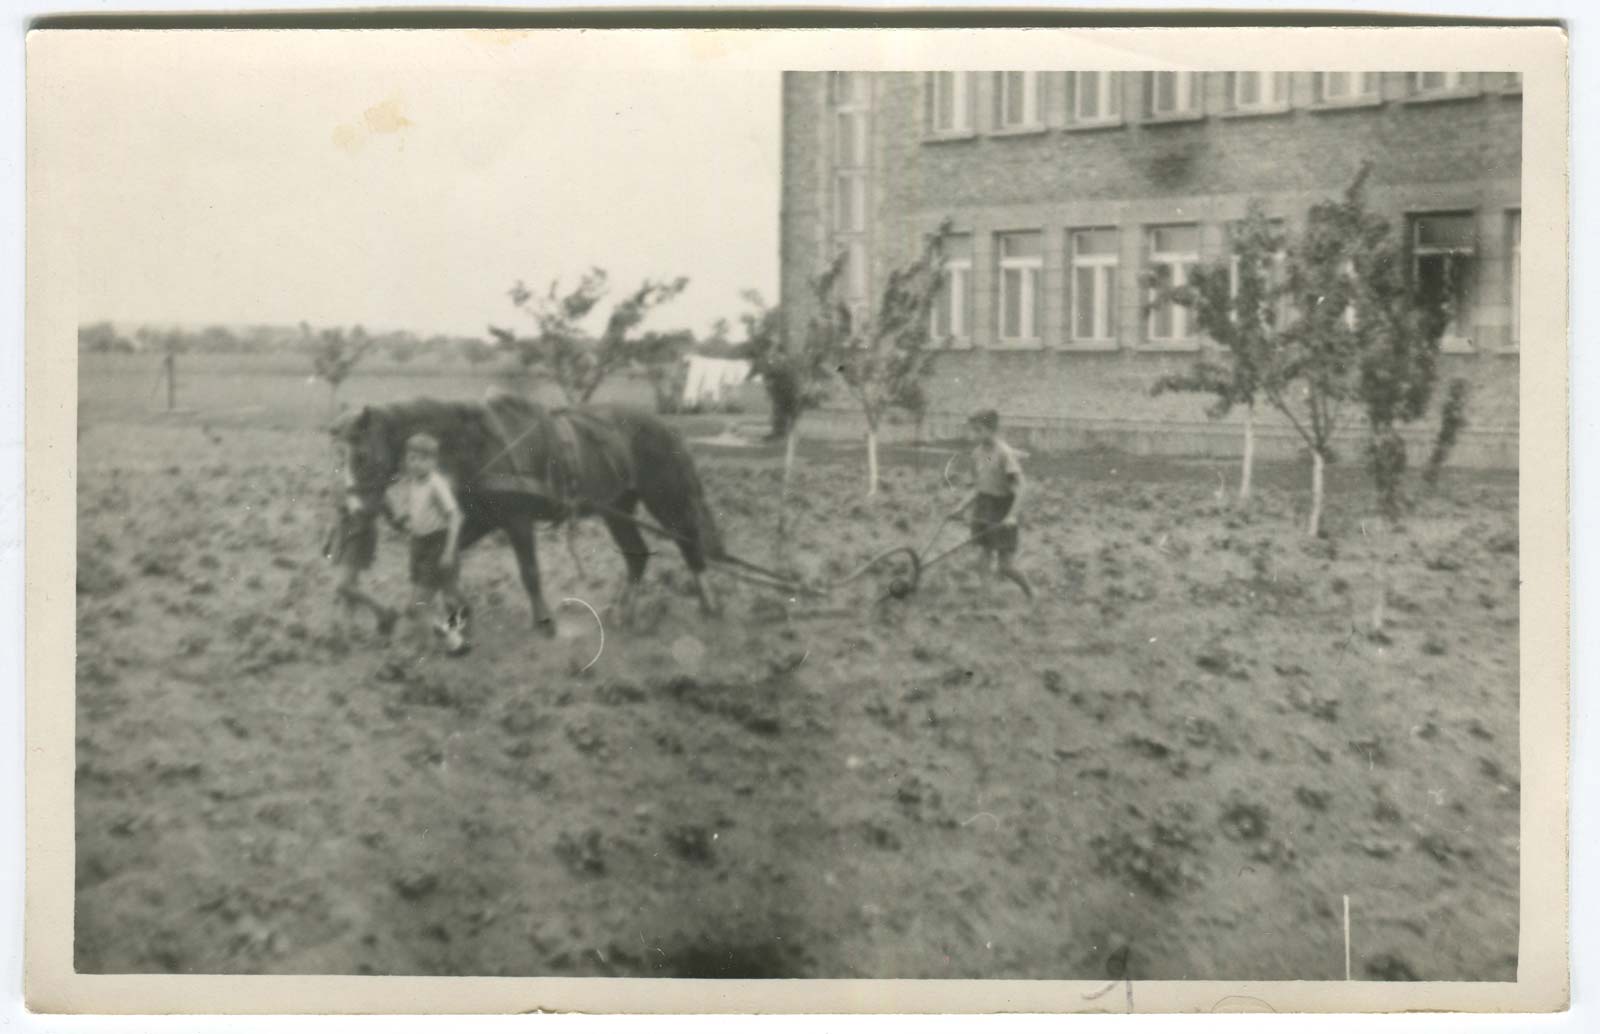 Uprawa ogrodów przy ul. Staszica w Kórniku - data na odwrocie zdjęcia 1 lipca 1960 roku